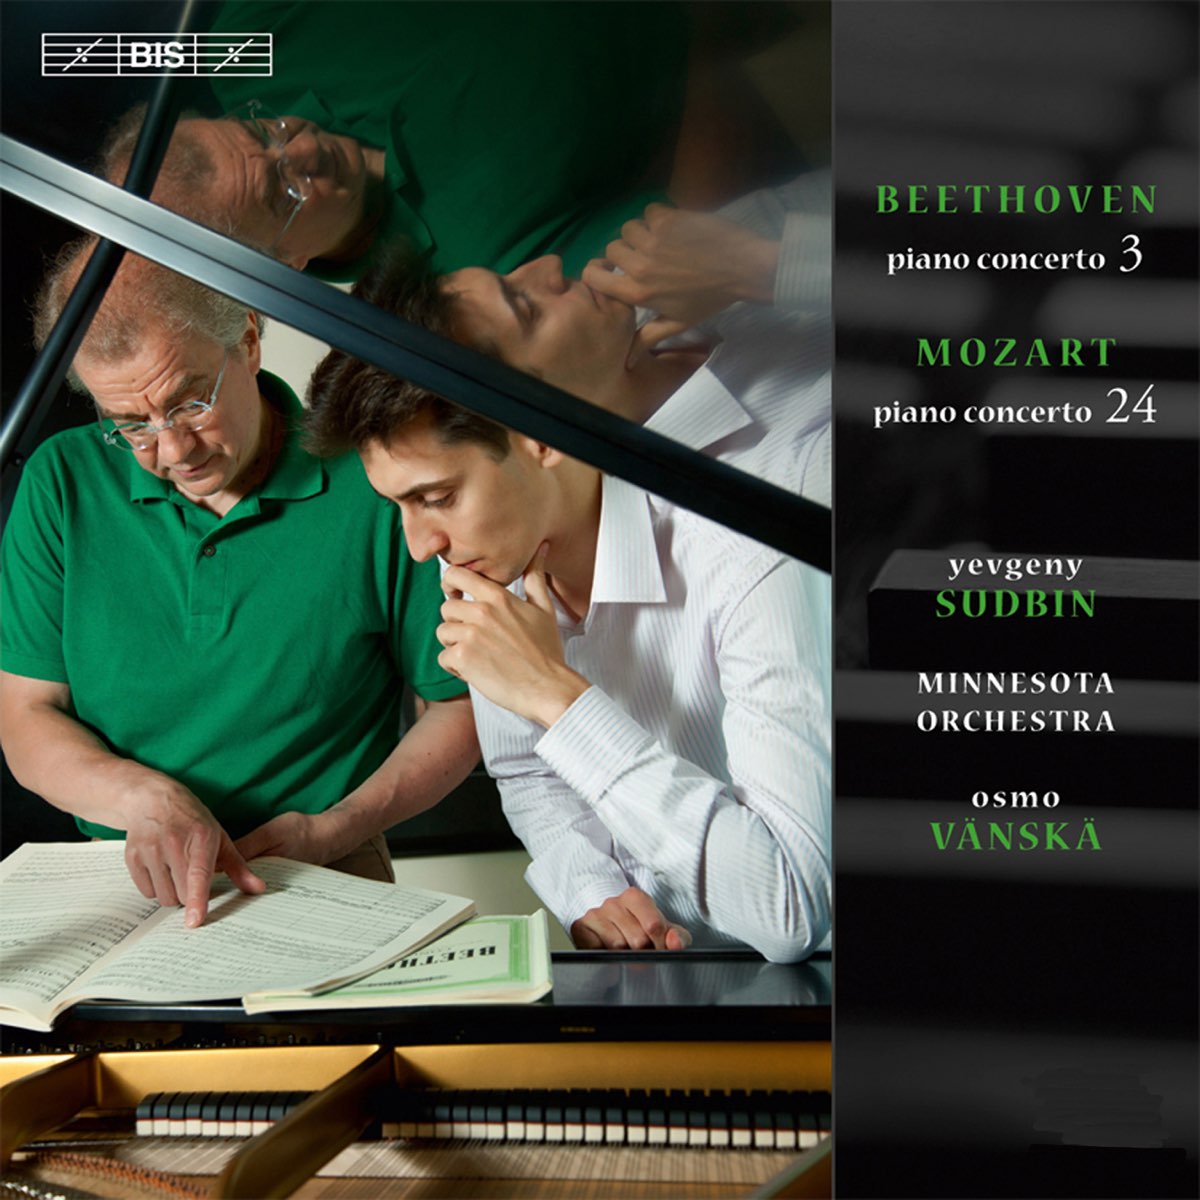 Beethoven: Piano Concerto No. 3 - Mozart: Piano Concerto No. 24 de Yevgeny  Sudbin, Minnesota Orchestra & Osmo Vänskä en Apple Music